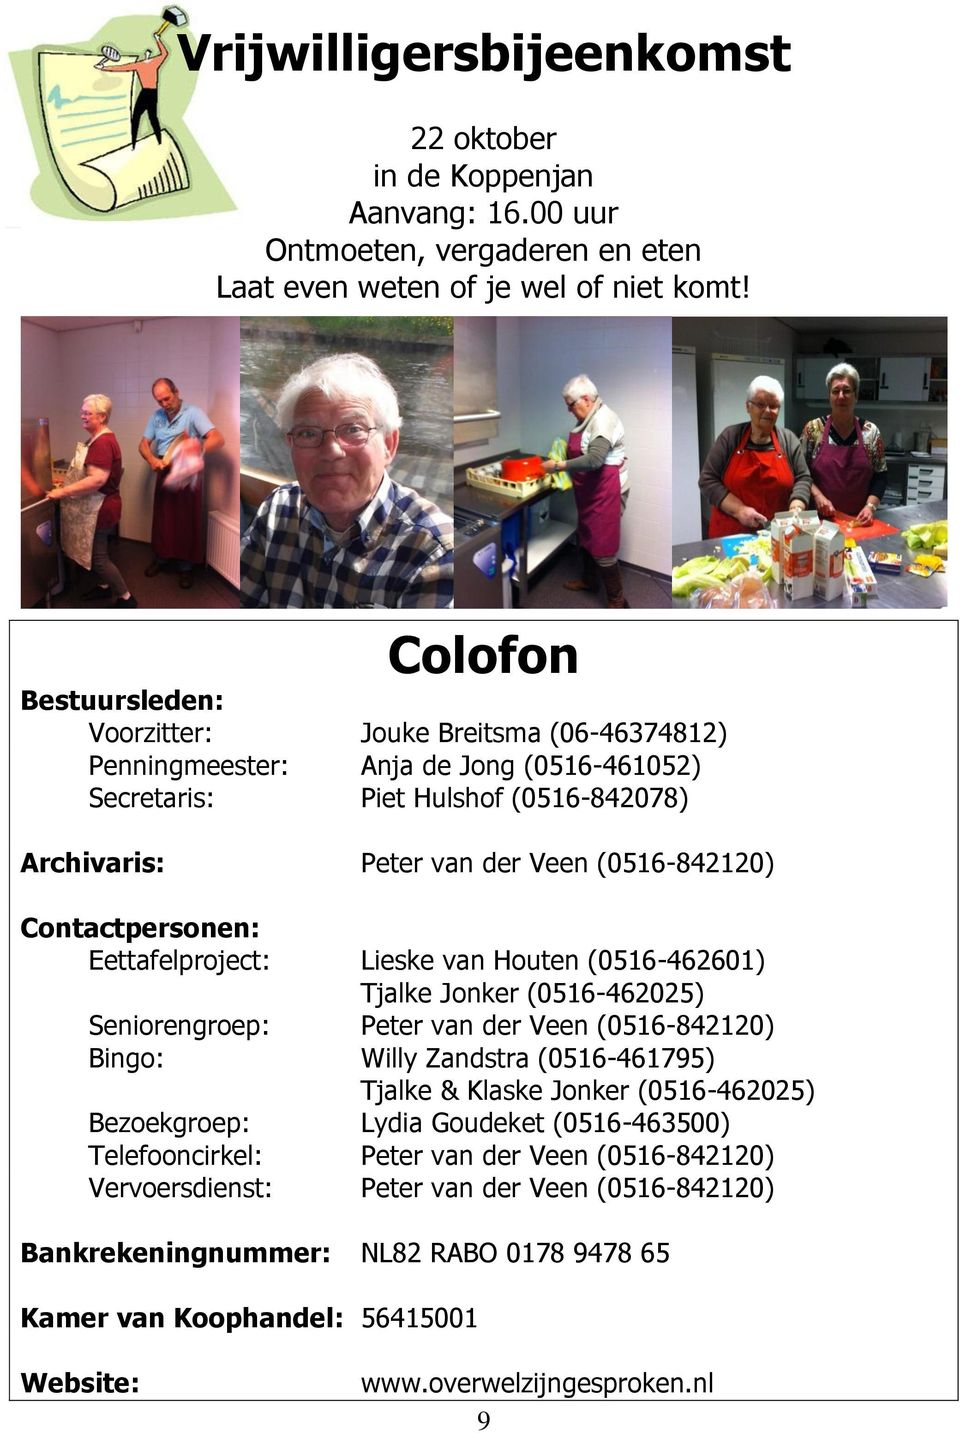 Contactpersonen: Eettafelproject: Lieske van Houten (0516-462601) Tjalke Jonker (0516-462025) Seniorengroep: Peter van der Veen (0516-842120) Bingo: Willy Zandstra (0516-461795) Tjalke & Klaske